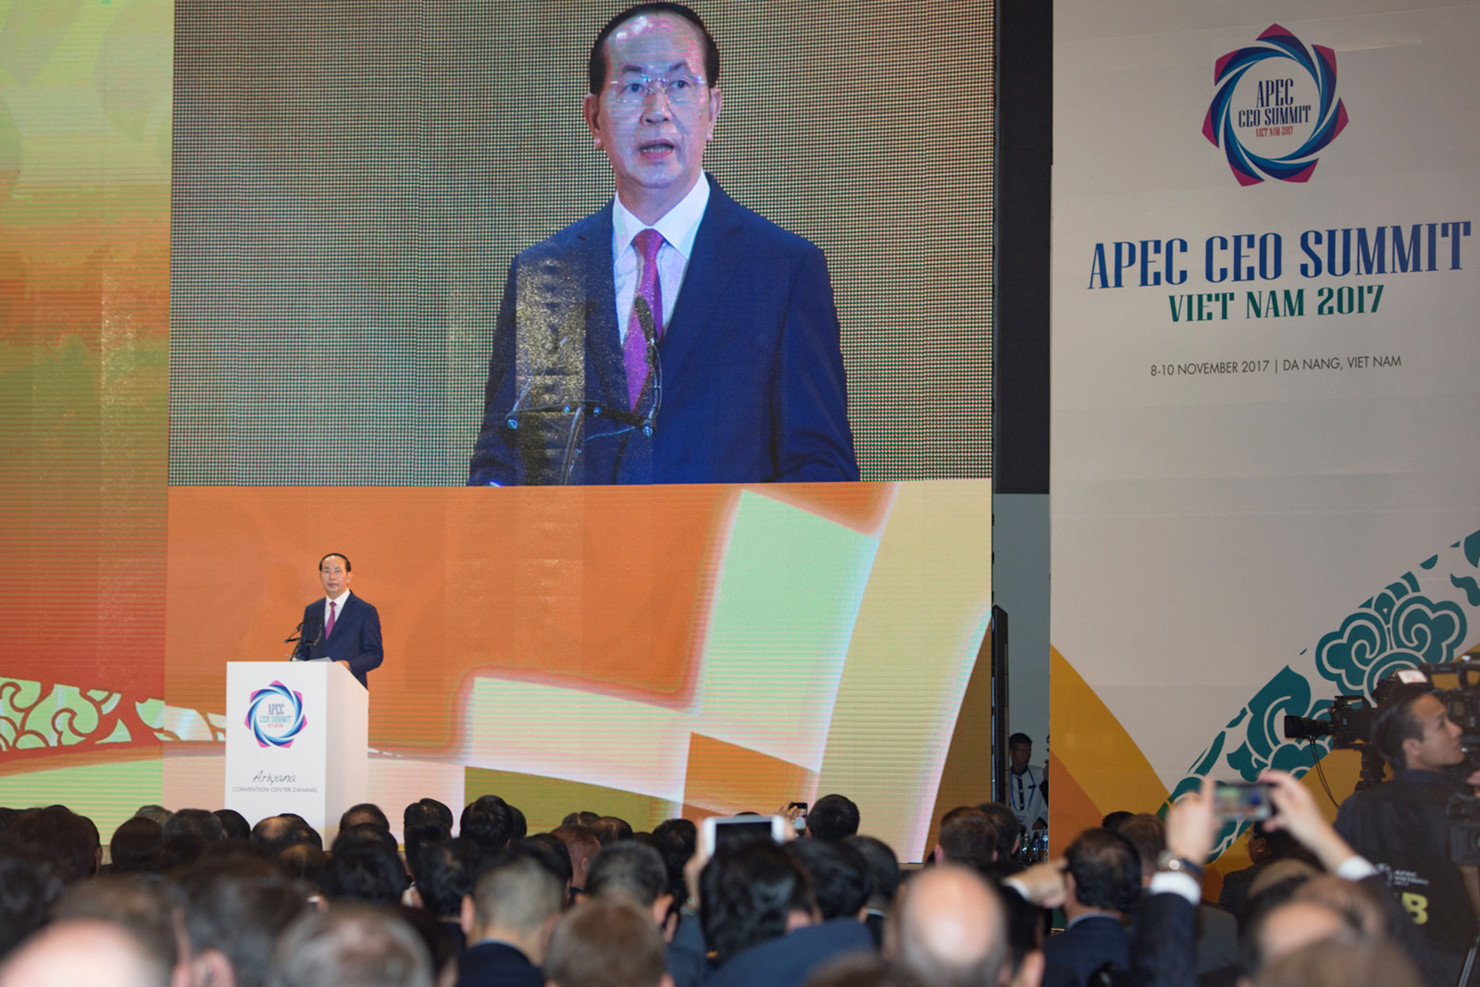 Chủ tịch nước Trần Đại Quang, Chủ tịch APEC Việt Nam 2017 phát biểu tại phiên Đối thoại giữa các nhà lãnh đạo các nền kinh tế thành viên APEC với các thành viên Hội đồng ABAC, tổ chức tại Đà Nẵng ngày 10/11.